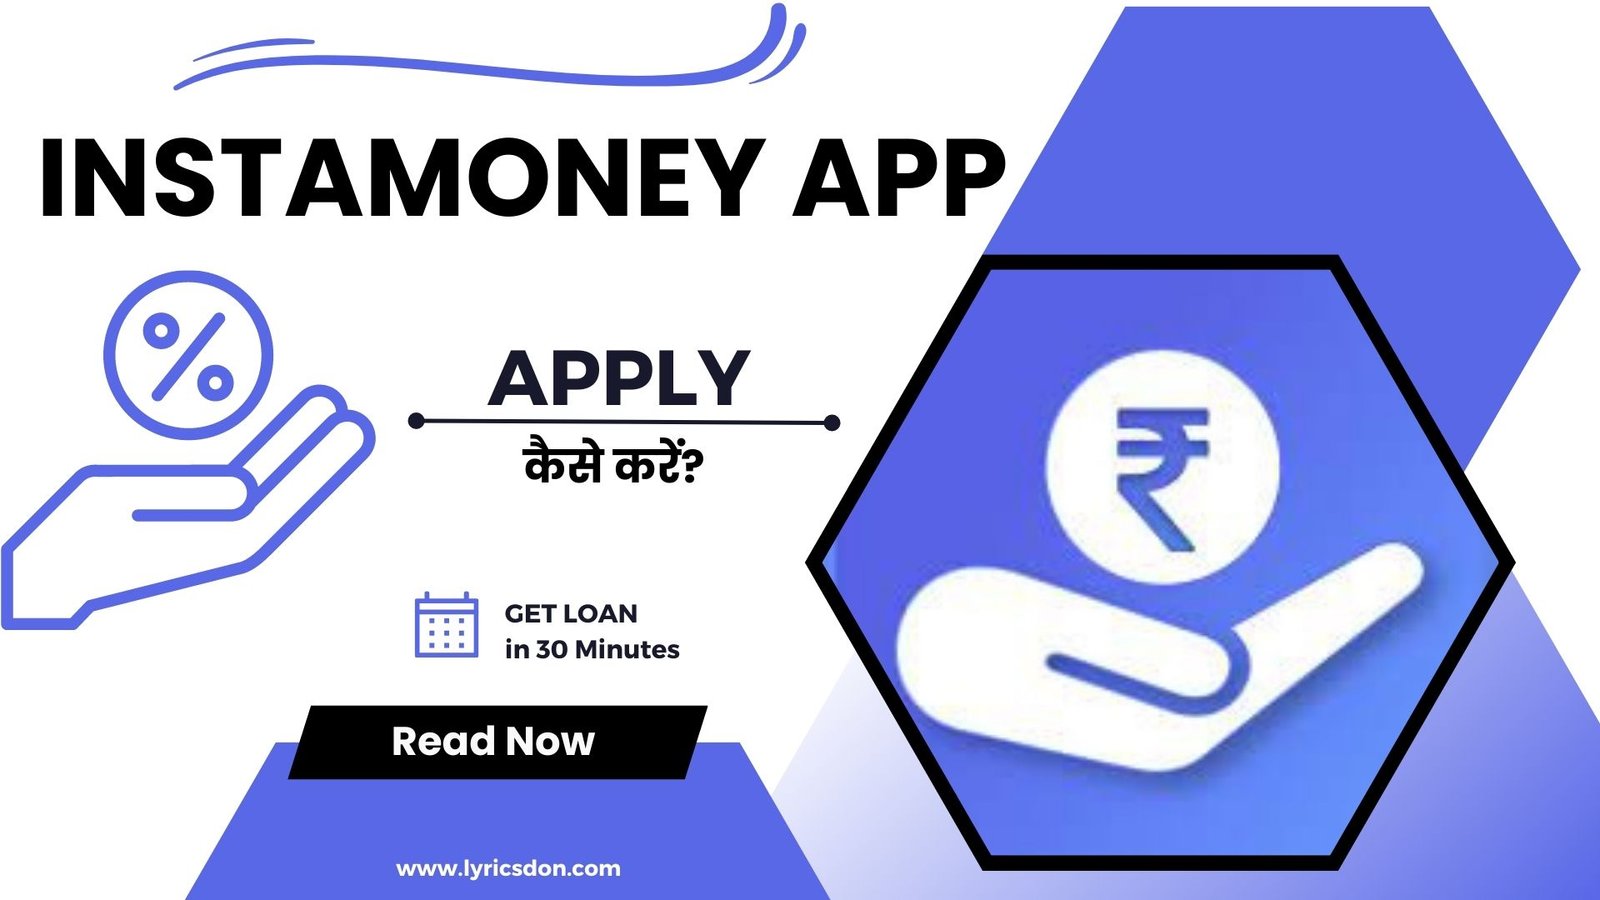 InstaMoney Loan App से लोन कैसे लें?